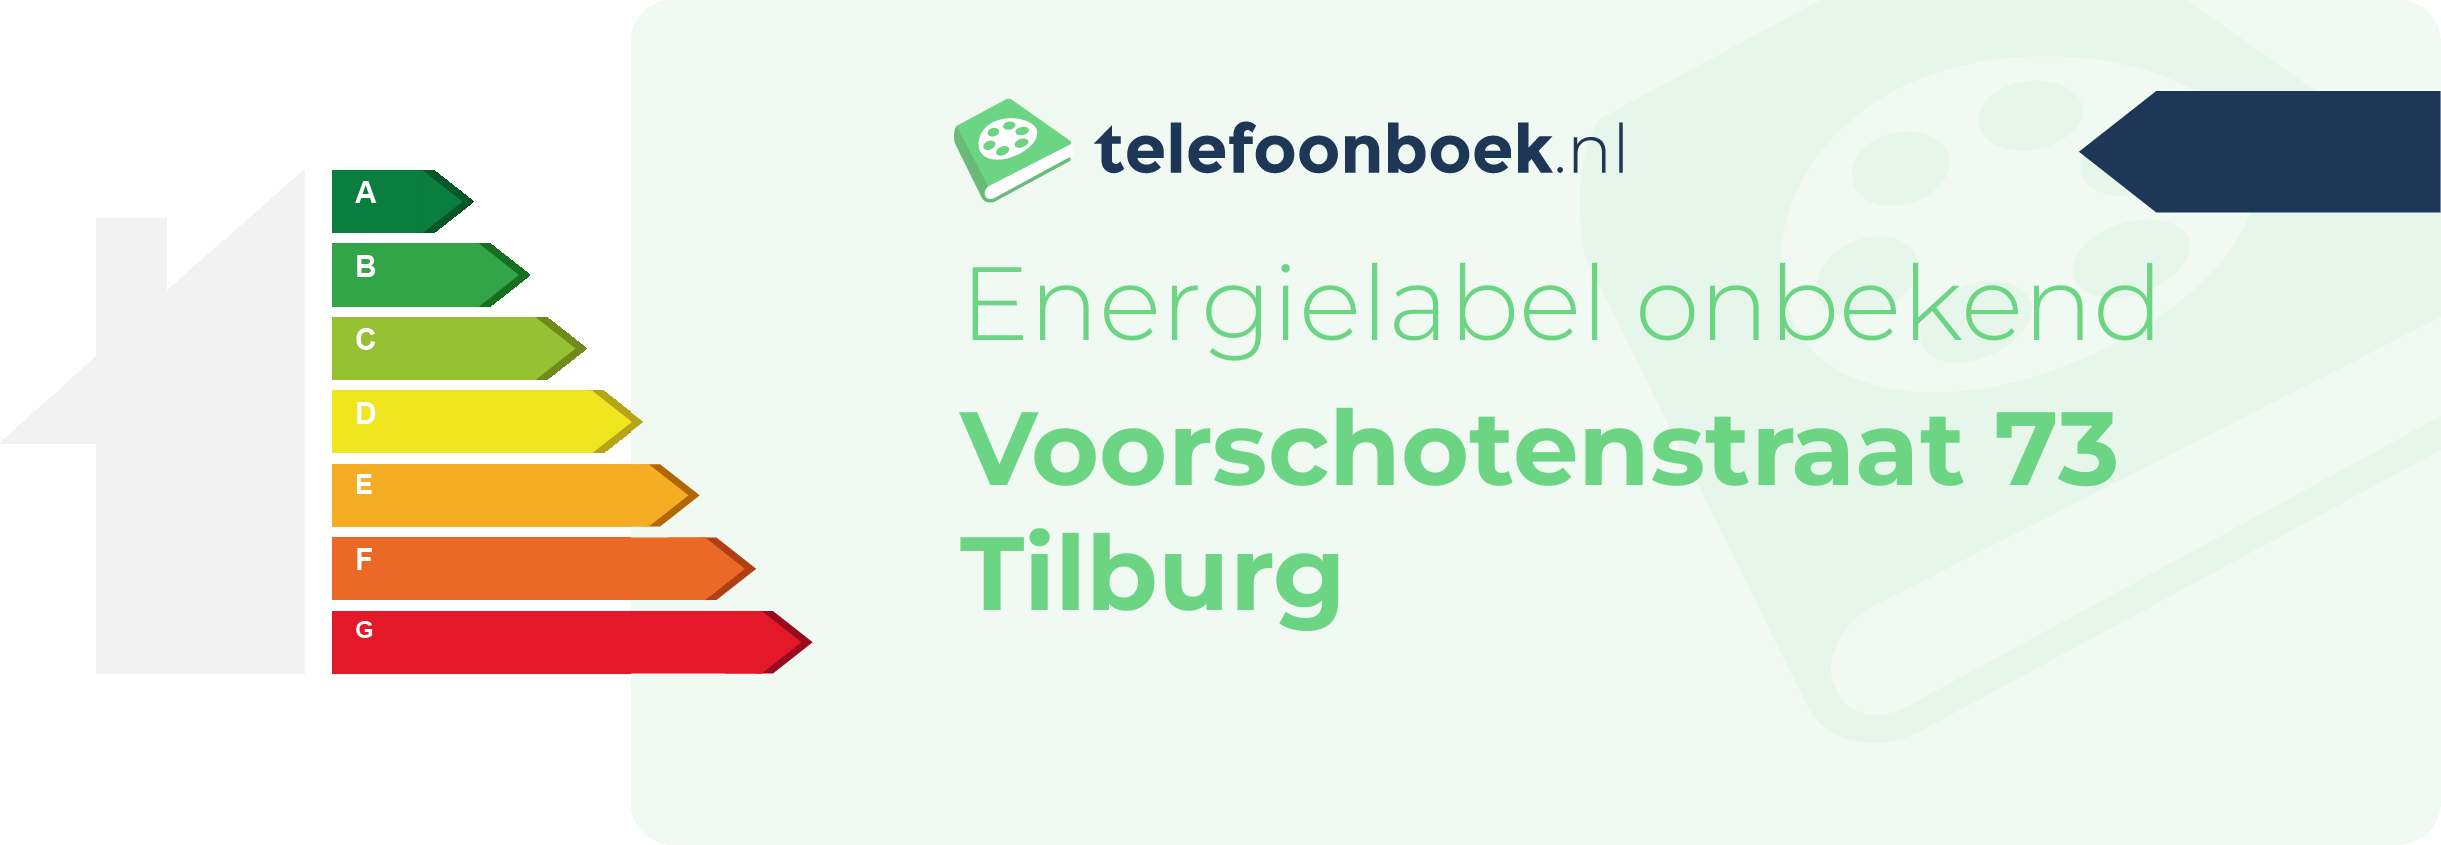 Energielabel Voorschotenstraat 73 Tilburg